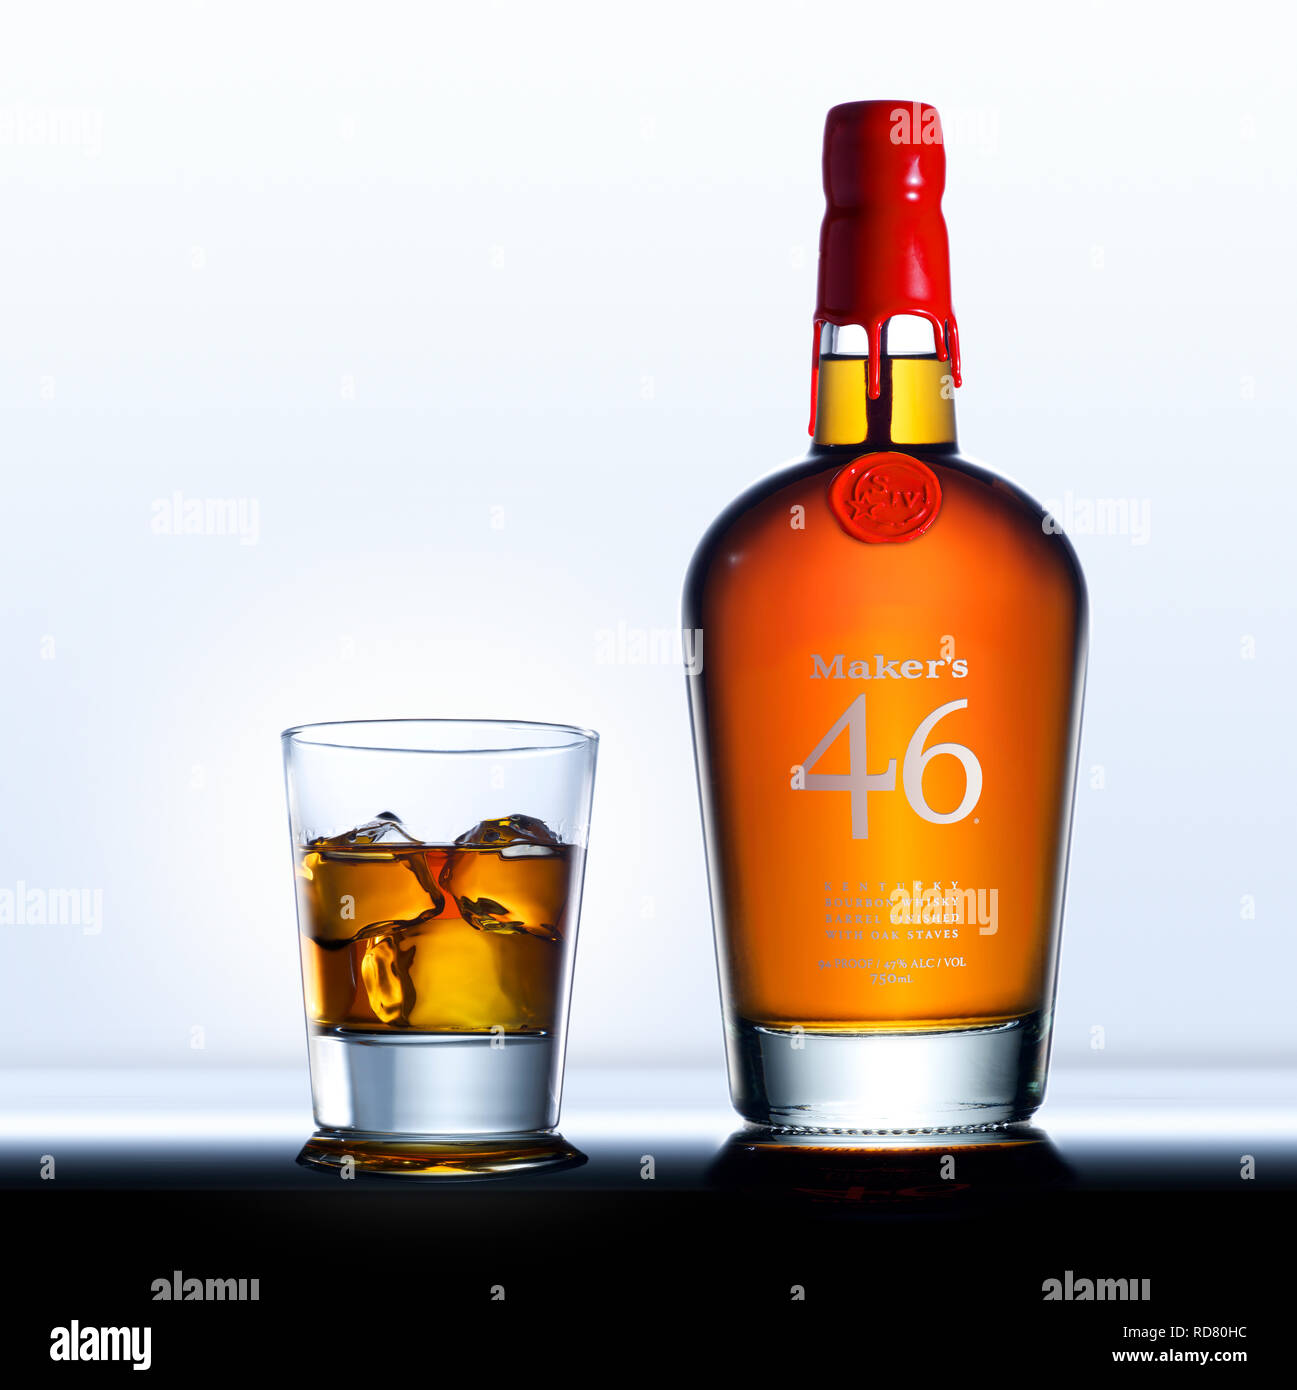 Maker's Mark 46 whiskey bottle and glass, studio shot Stock Photo